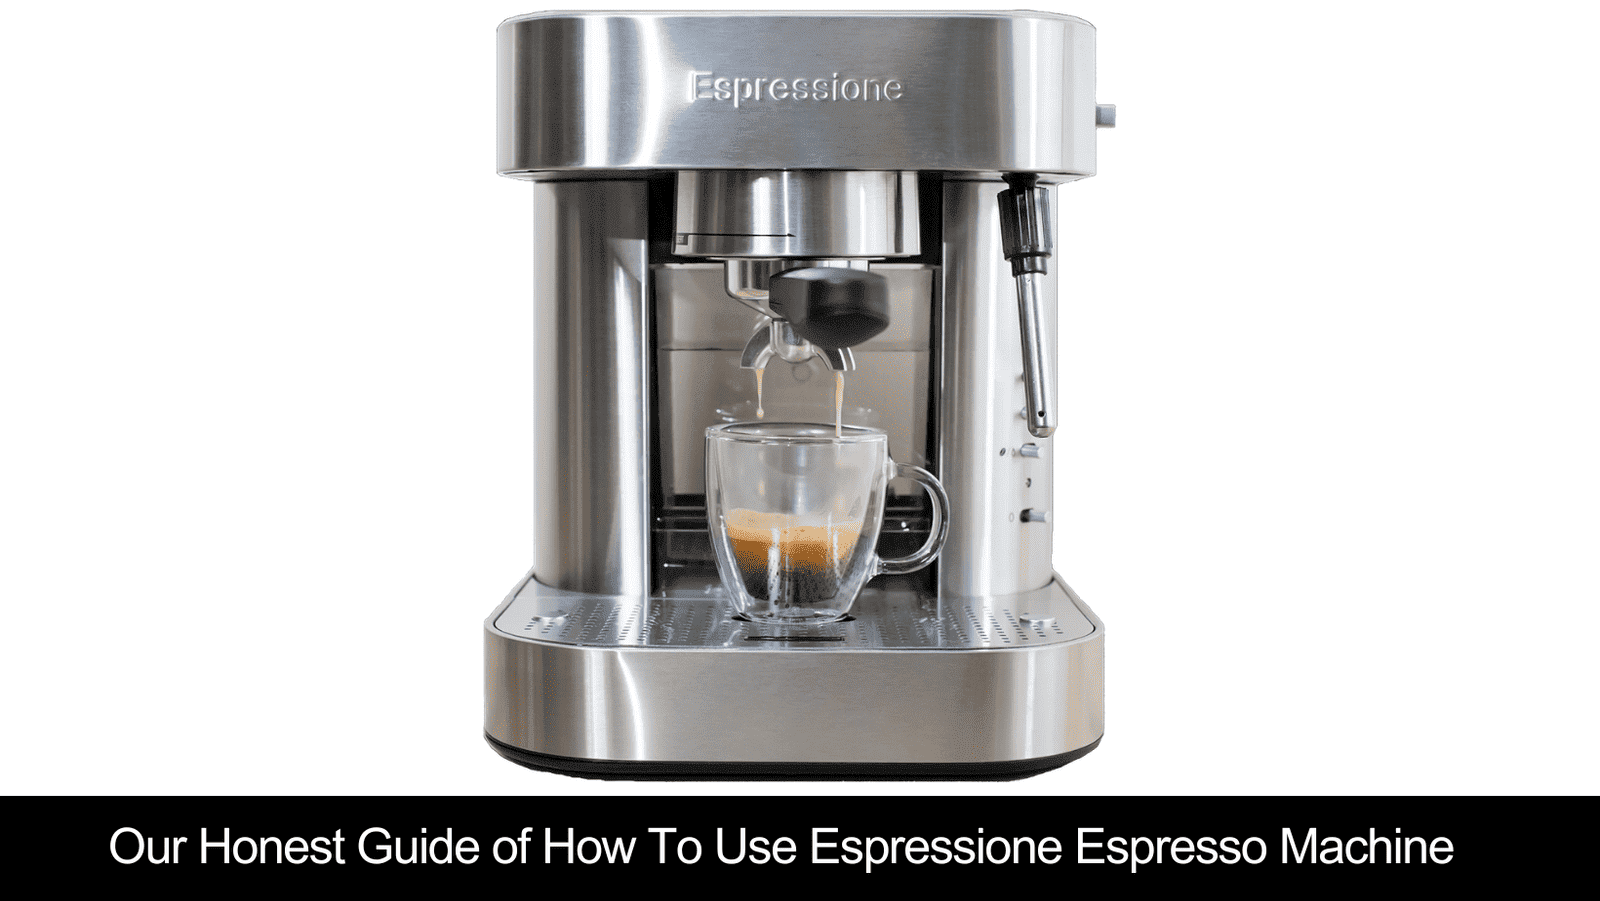 How To Use Espressione Espresso Machine